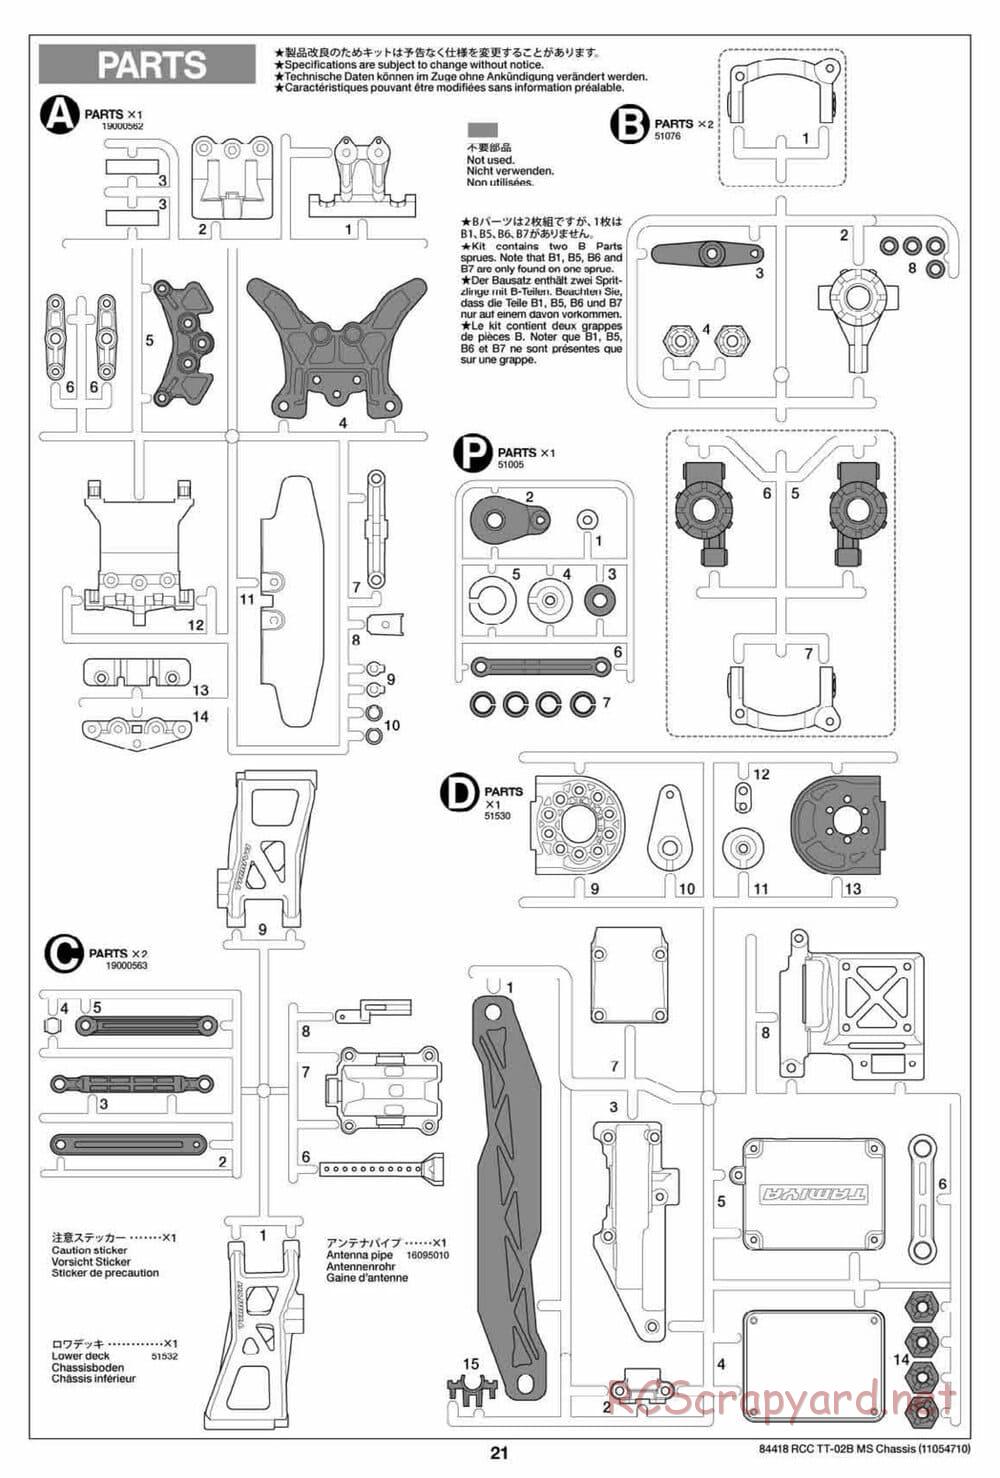 Tamiya - TT-02B MS Chassis - Manual - Page 21